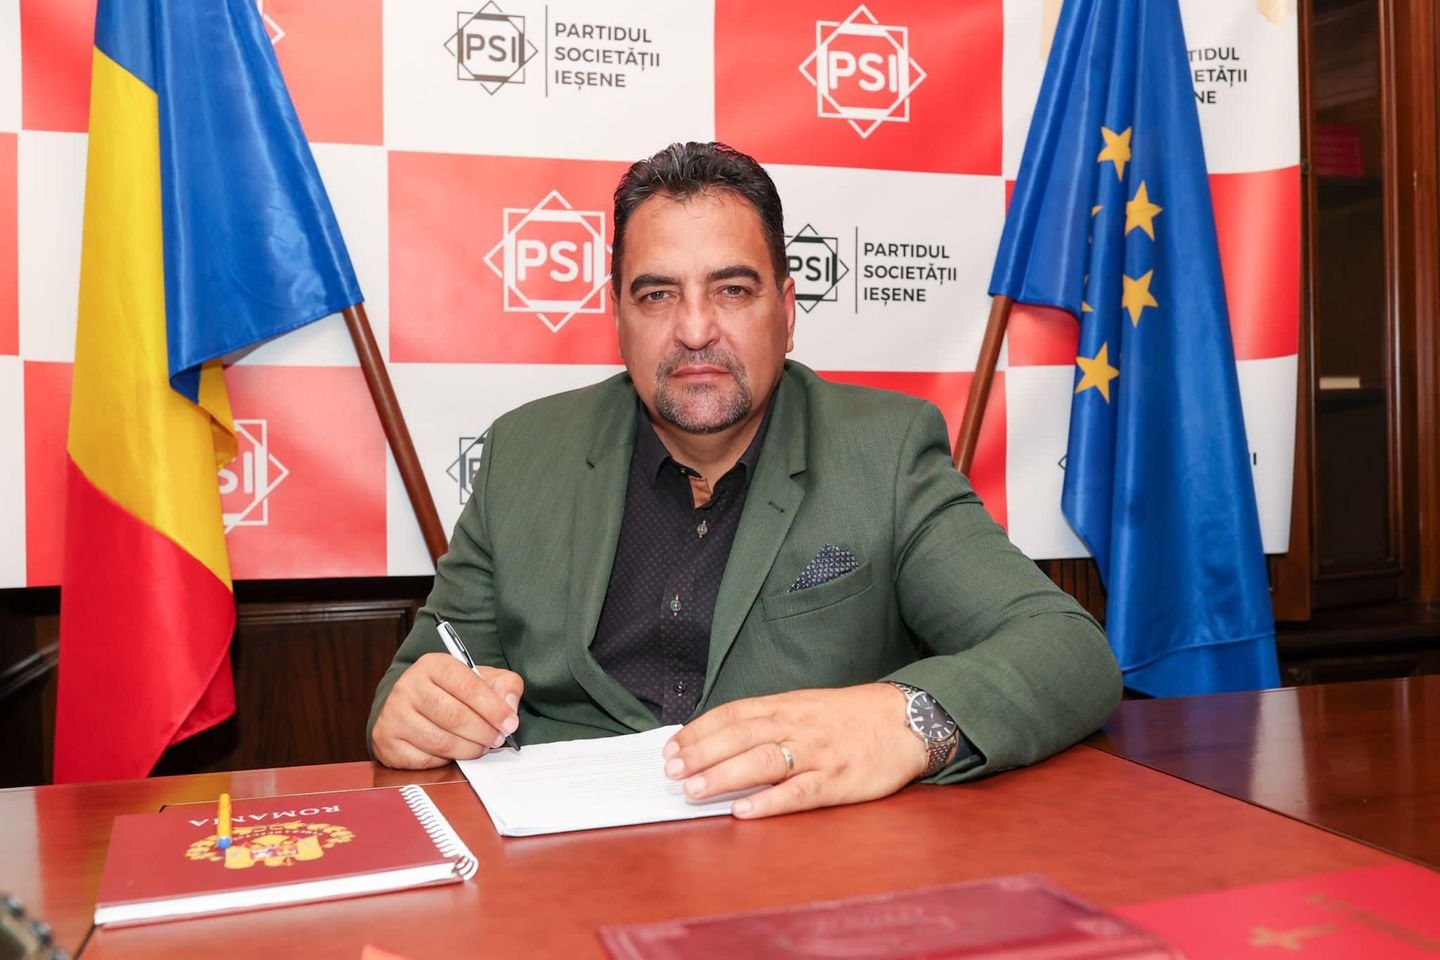  Fostul deputat Viorel Blăjuţ anunţă că va candida pentru funcţia de primar din partea Partidului Societăţii Ieşene